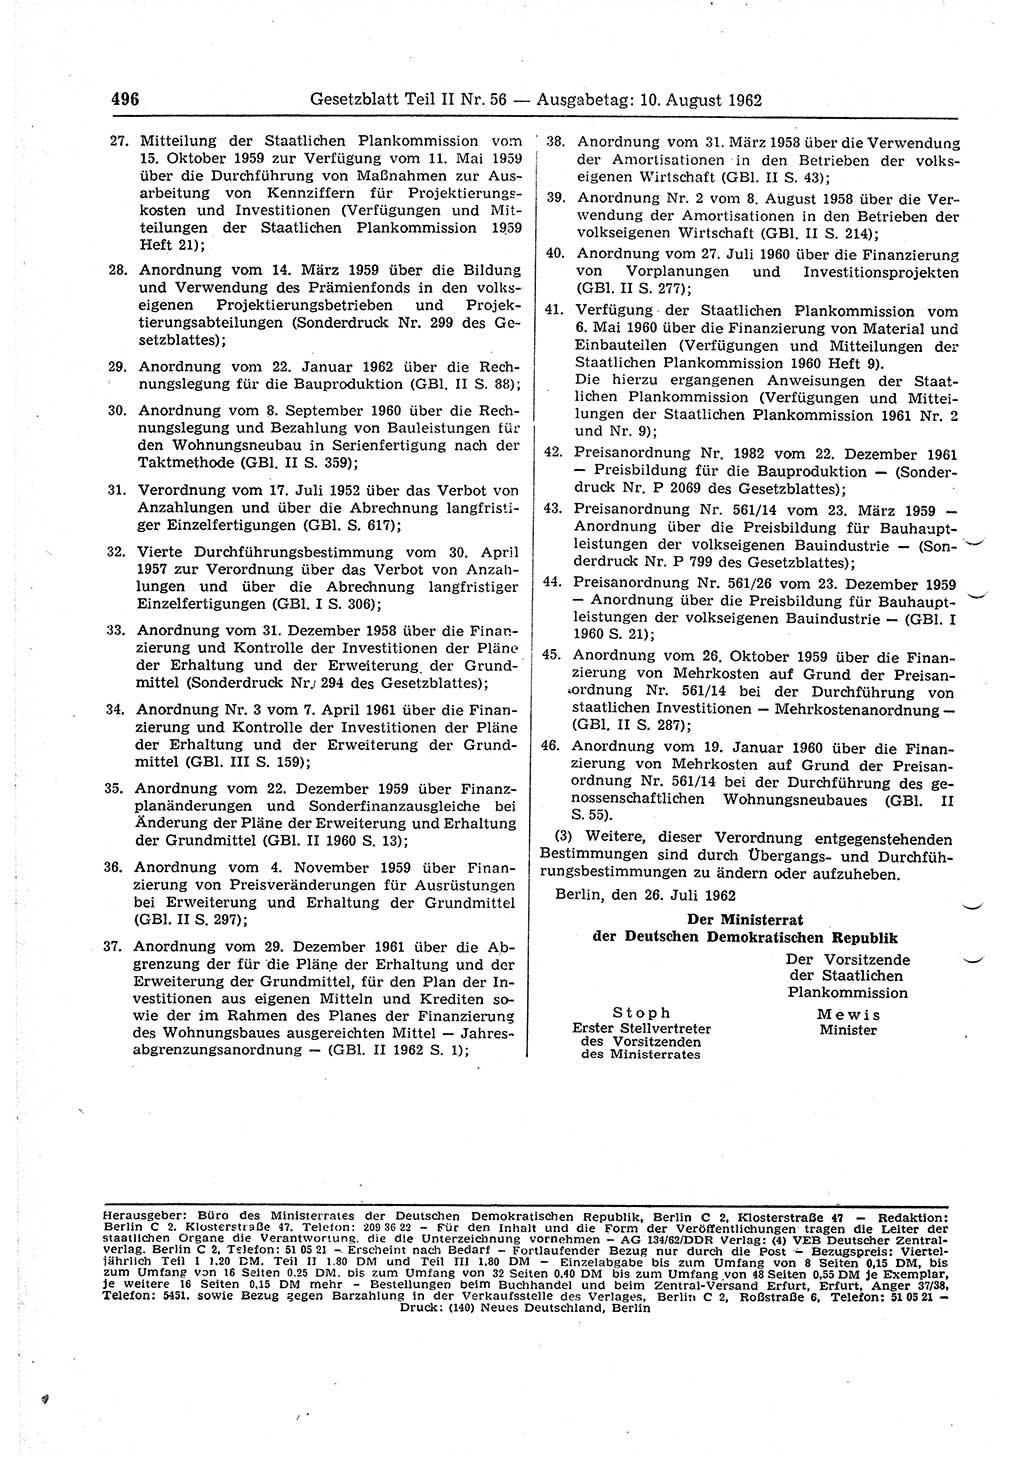 Gesetzblatt (GBl.) der Deutschen Demokratischen Republik (DDR) Teil ⅠⅠ 1962, Seite 496 (GBl. DDR ⅠⅠ 1962, S. 496)